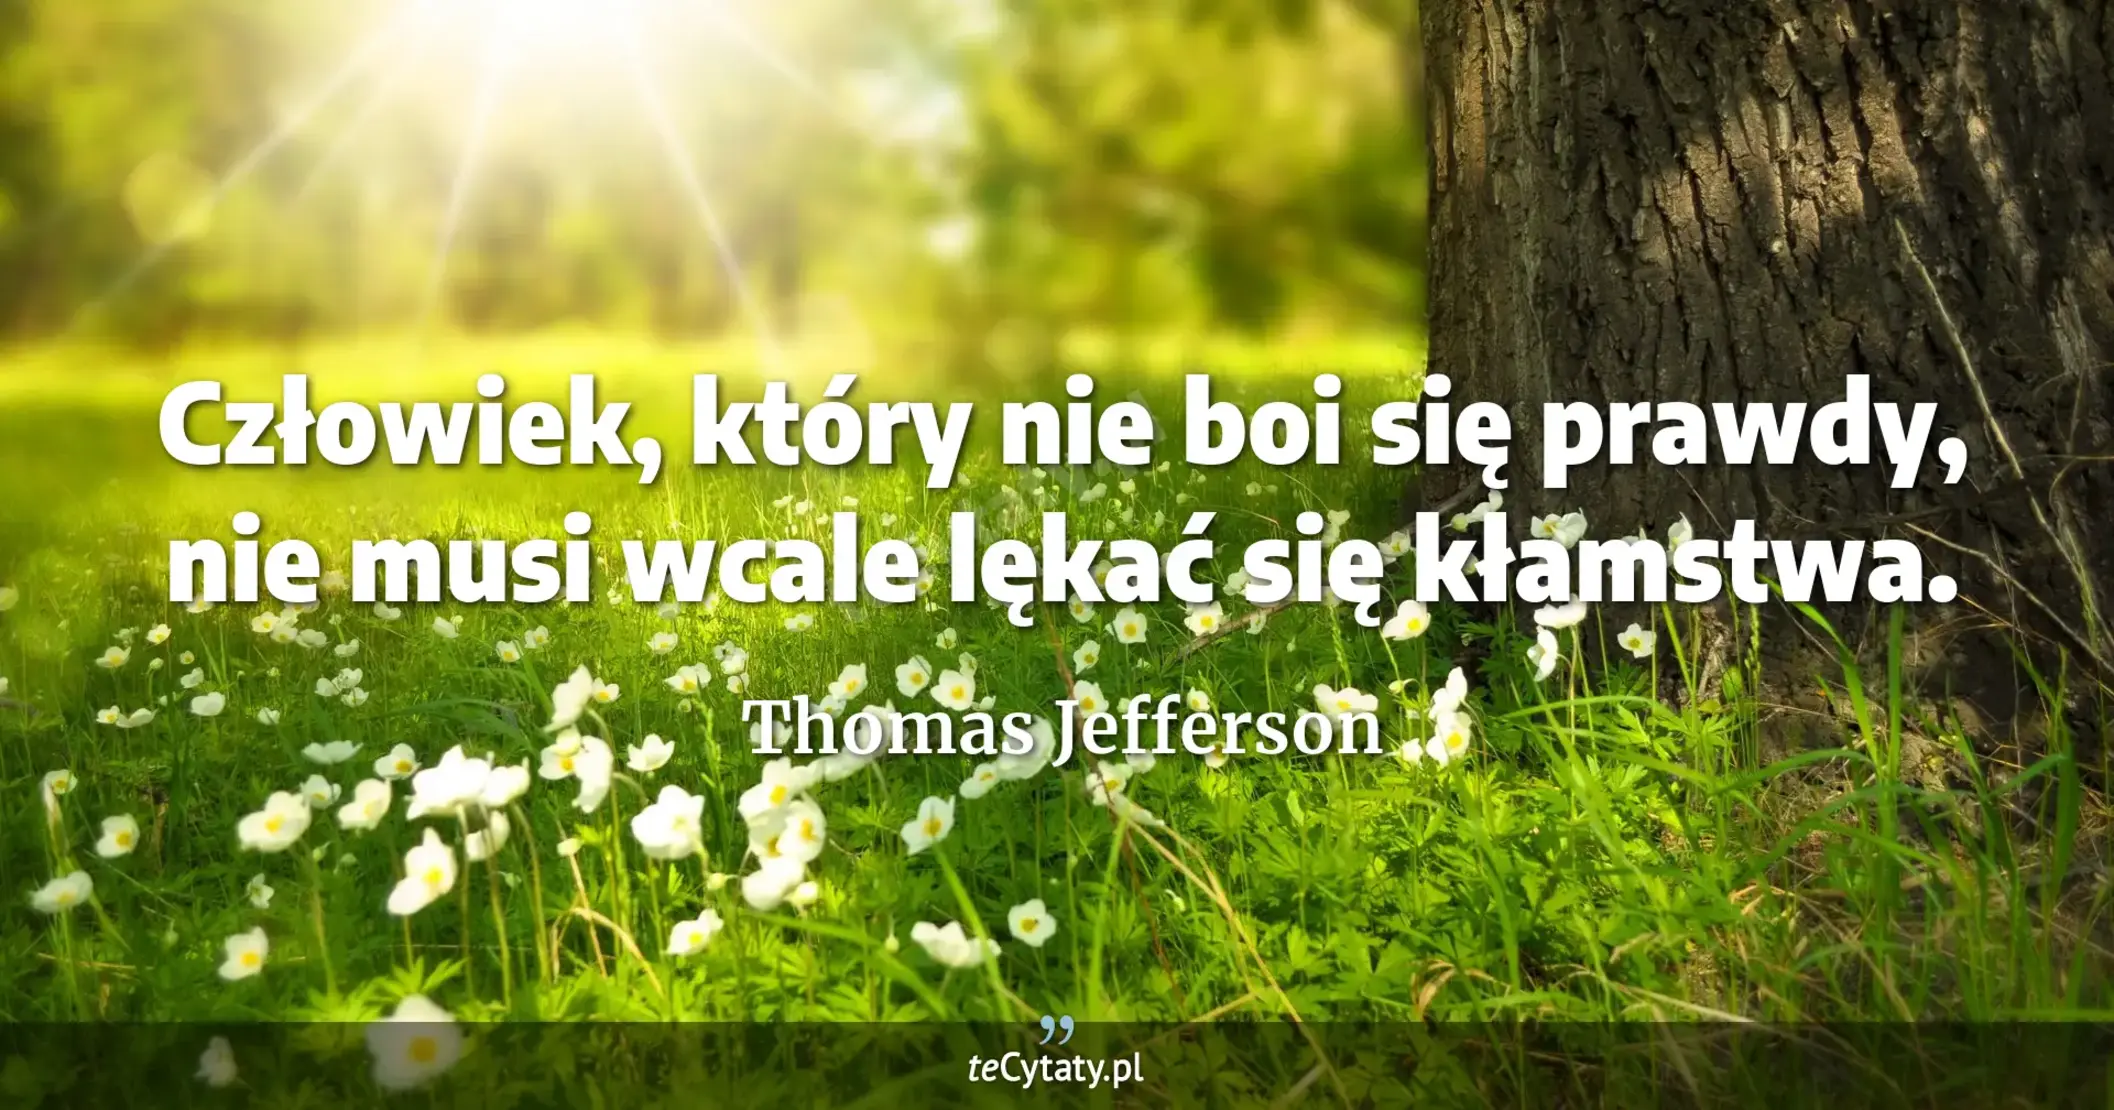 Człowiek, który nie boi się prawdy, nie musi wcale lękać się kłamstwa. - Thomas Jefferson